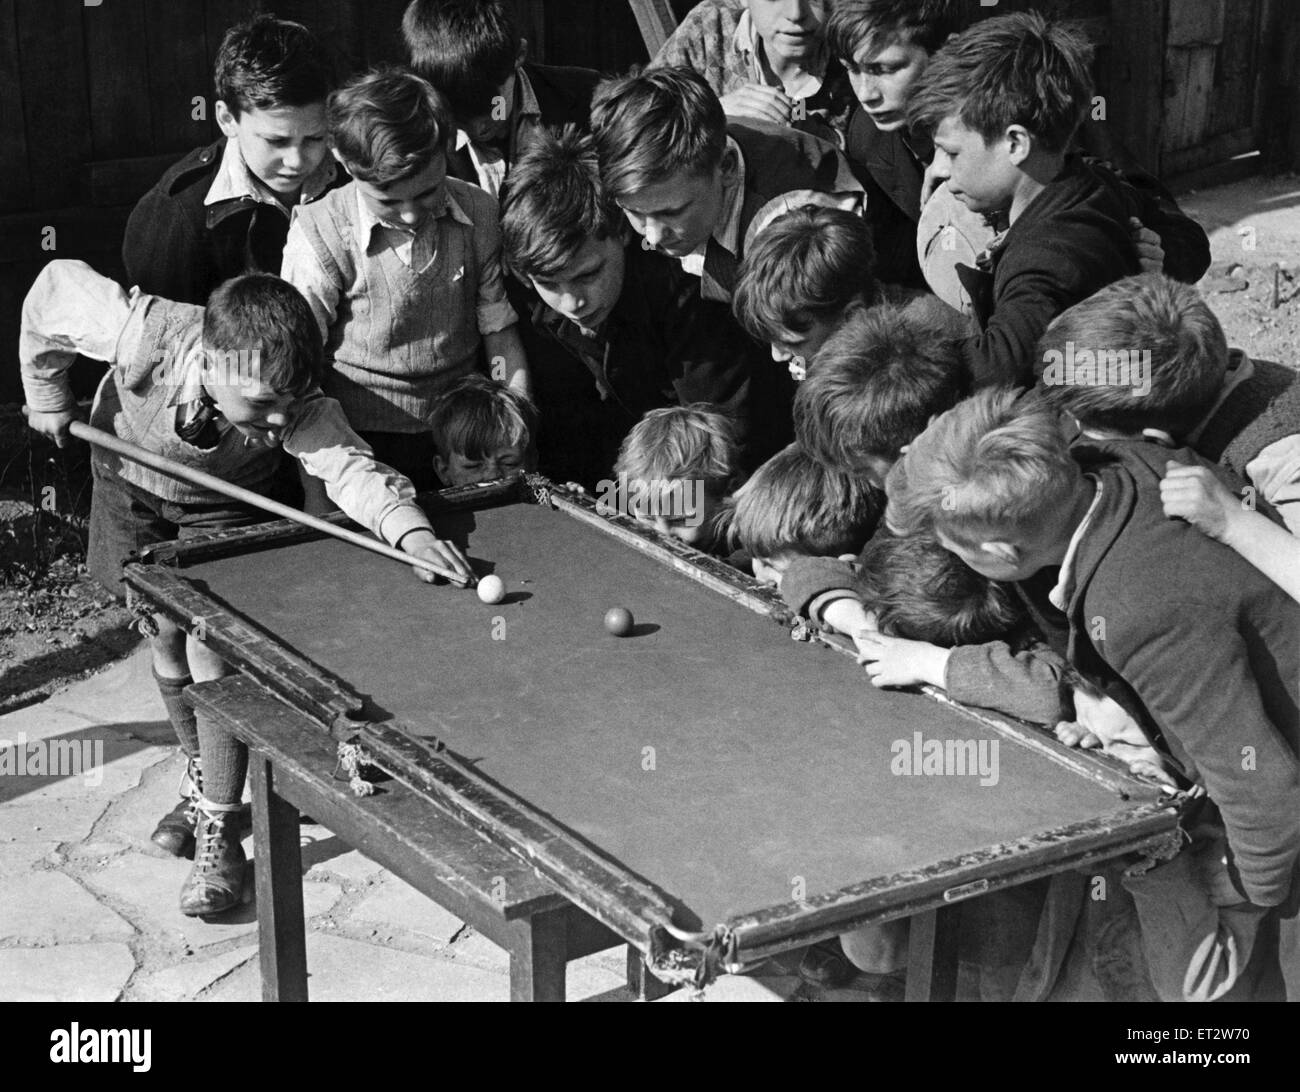 Sechzehn zerzausten Kopf bücken einen klapprigen Billard-Tisch an der Camel Club, Bethnal Grün, wie 11 jährige Ronnie Munday bereitet sich auf einen Schuss Topf. In einer bombardierten Website Bethnal Green, London, wo die Jungs ihre Zeit, Fußball gebootet verbringen Ronnie schafft einen b Stockfoto